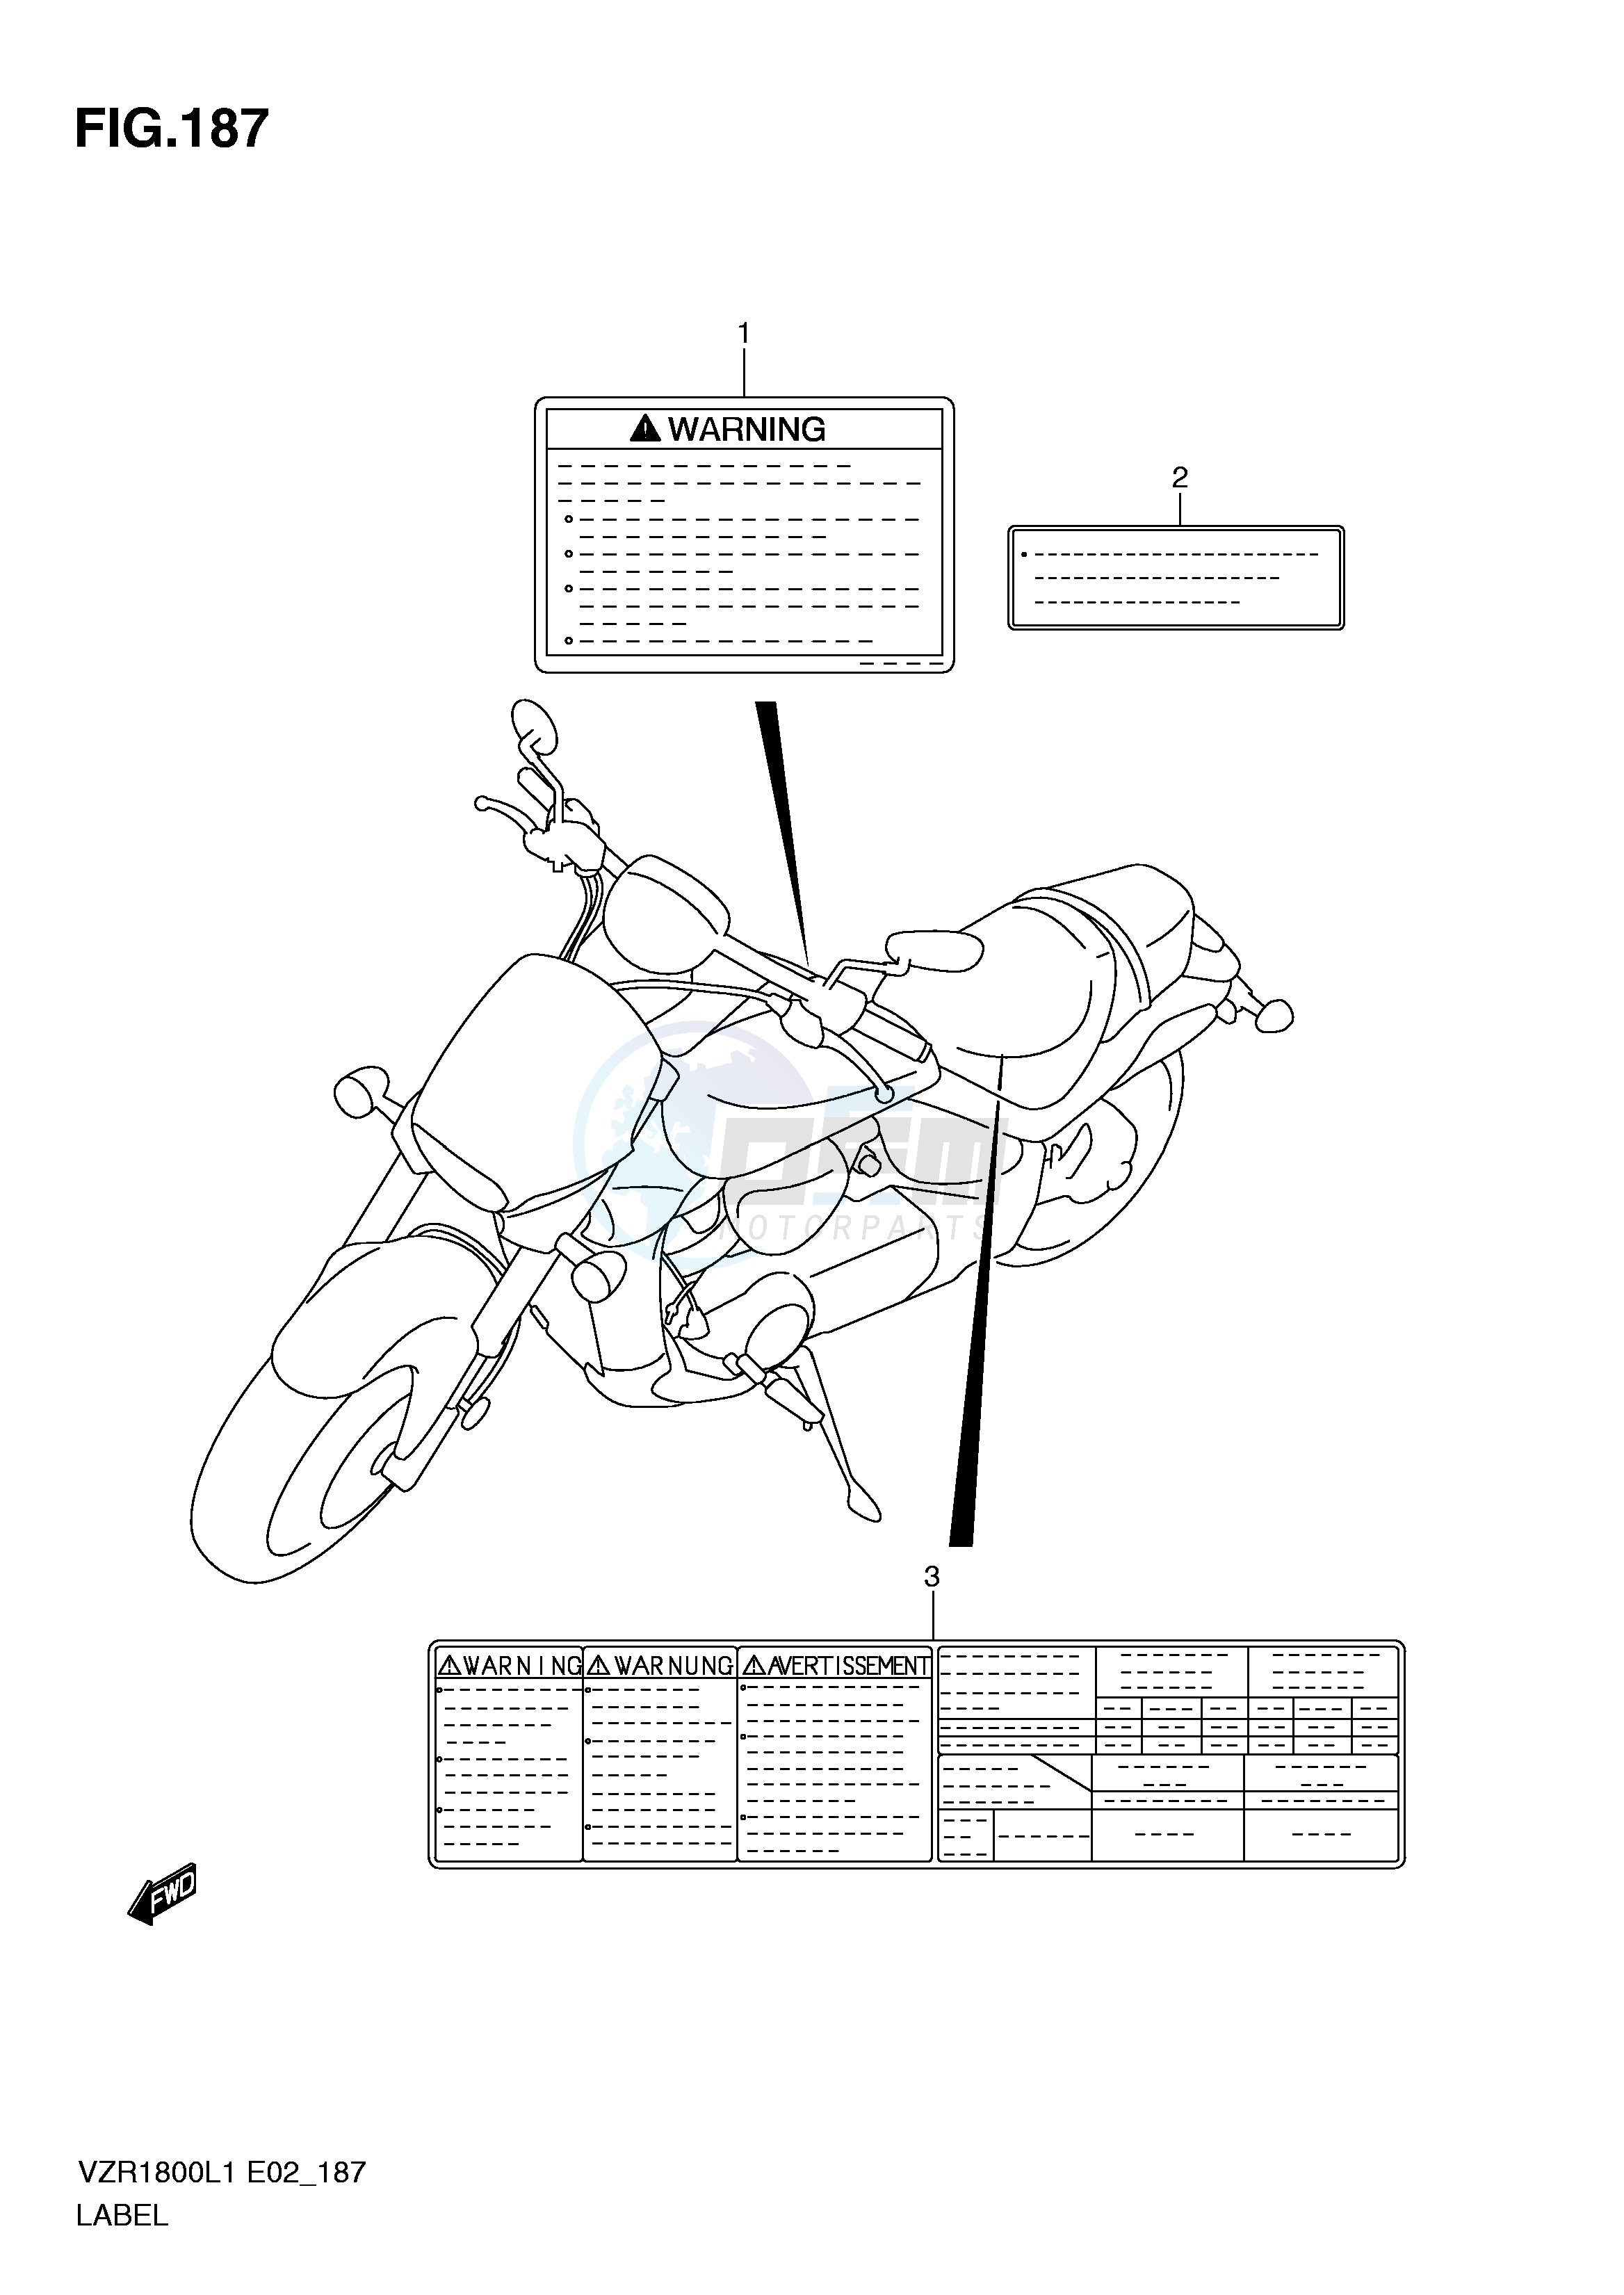 LABEL (VZR1800ZL1 E2) blueprint